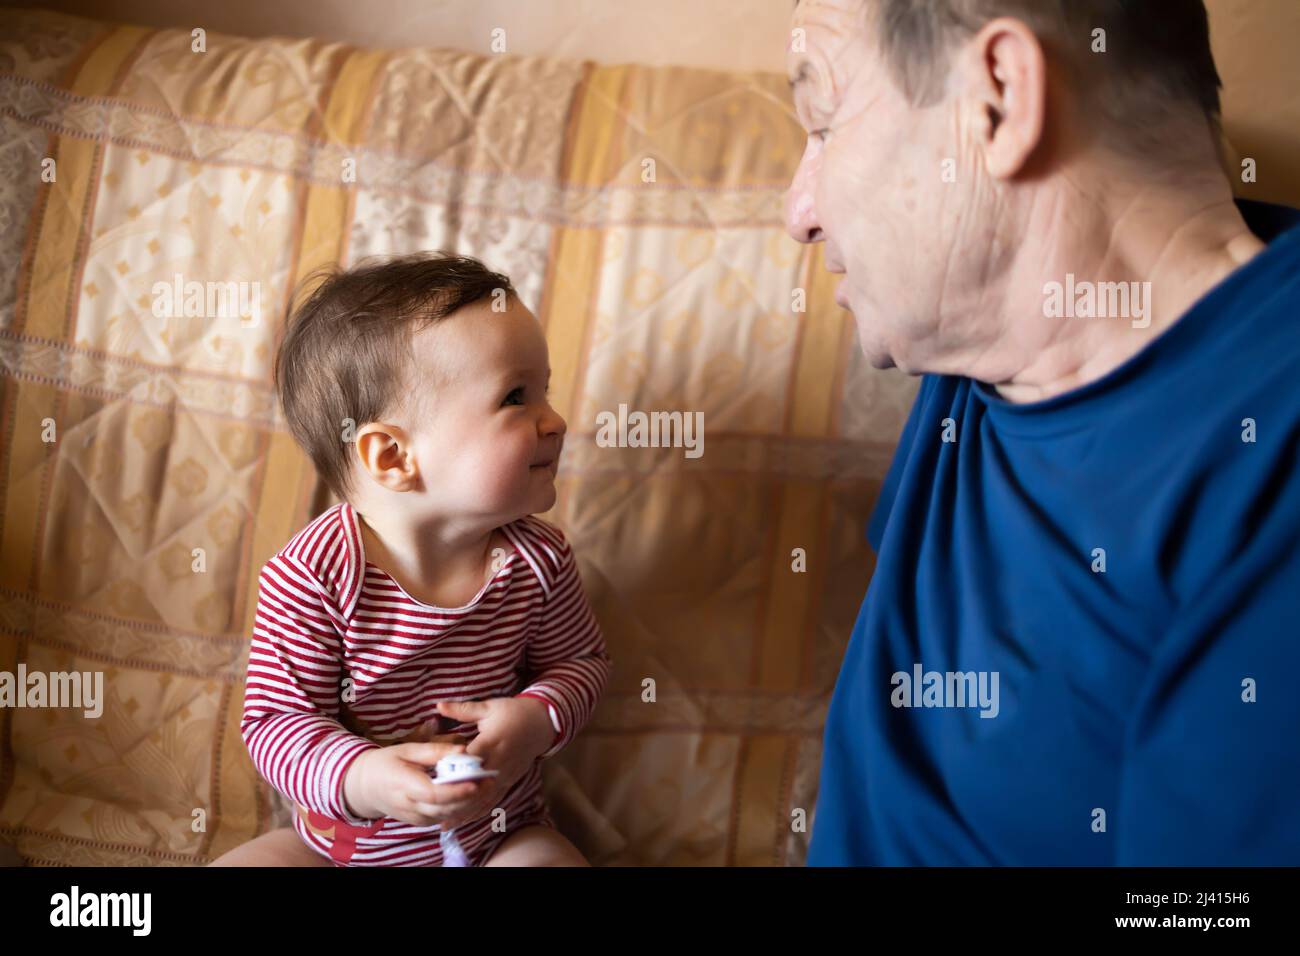 Un bébé souriant et son grand-père jouant ensemble Banque D'Images